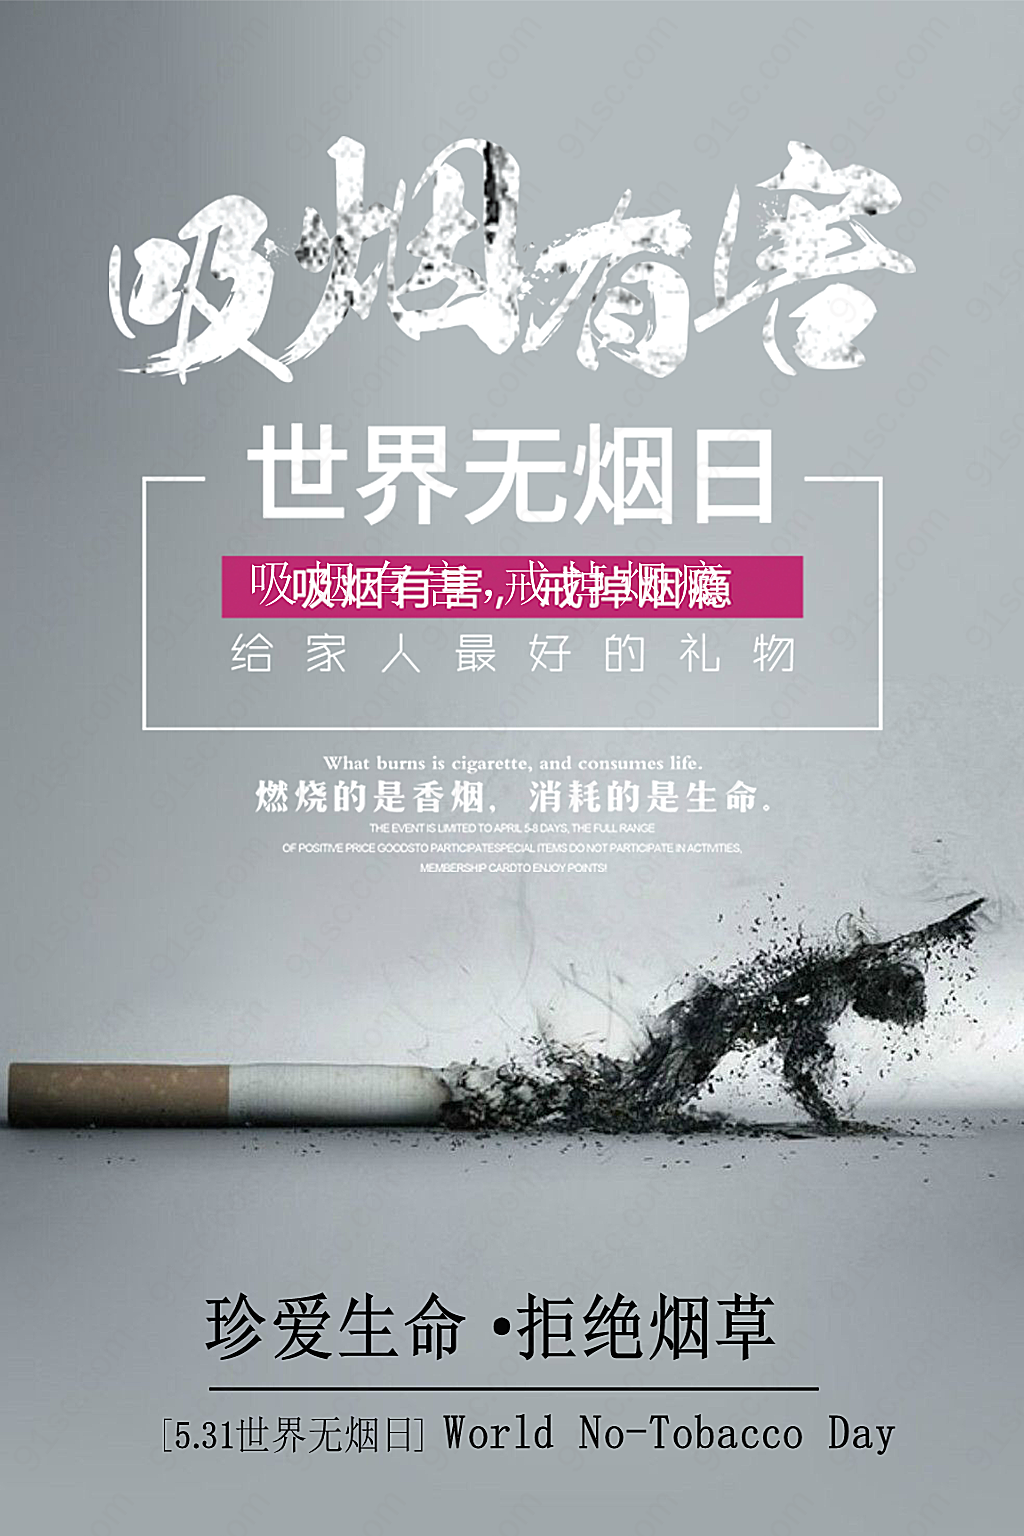 吸烟有害公益宣传广告设计